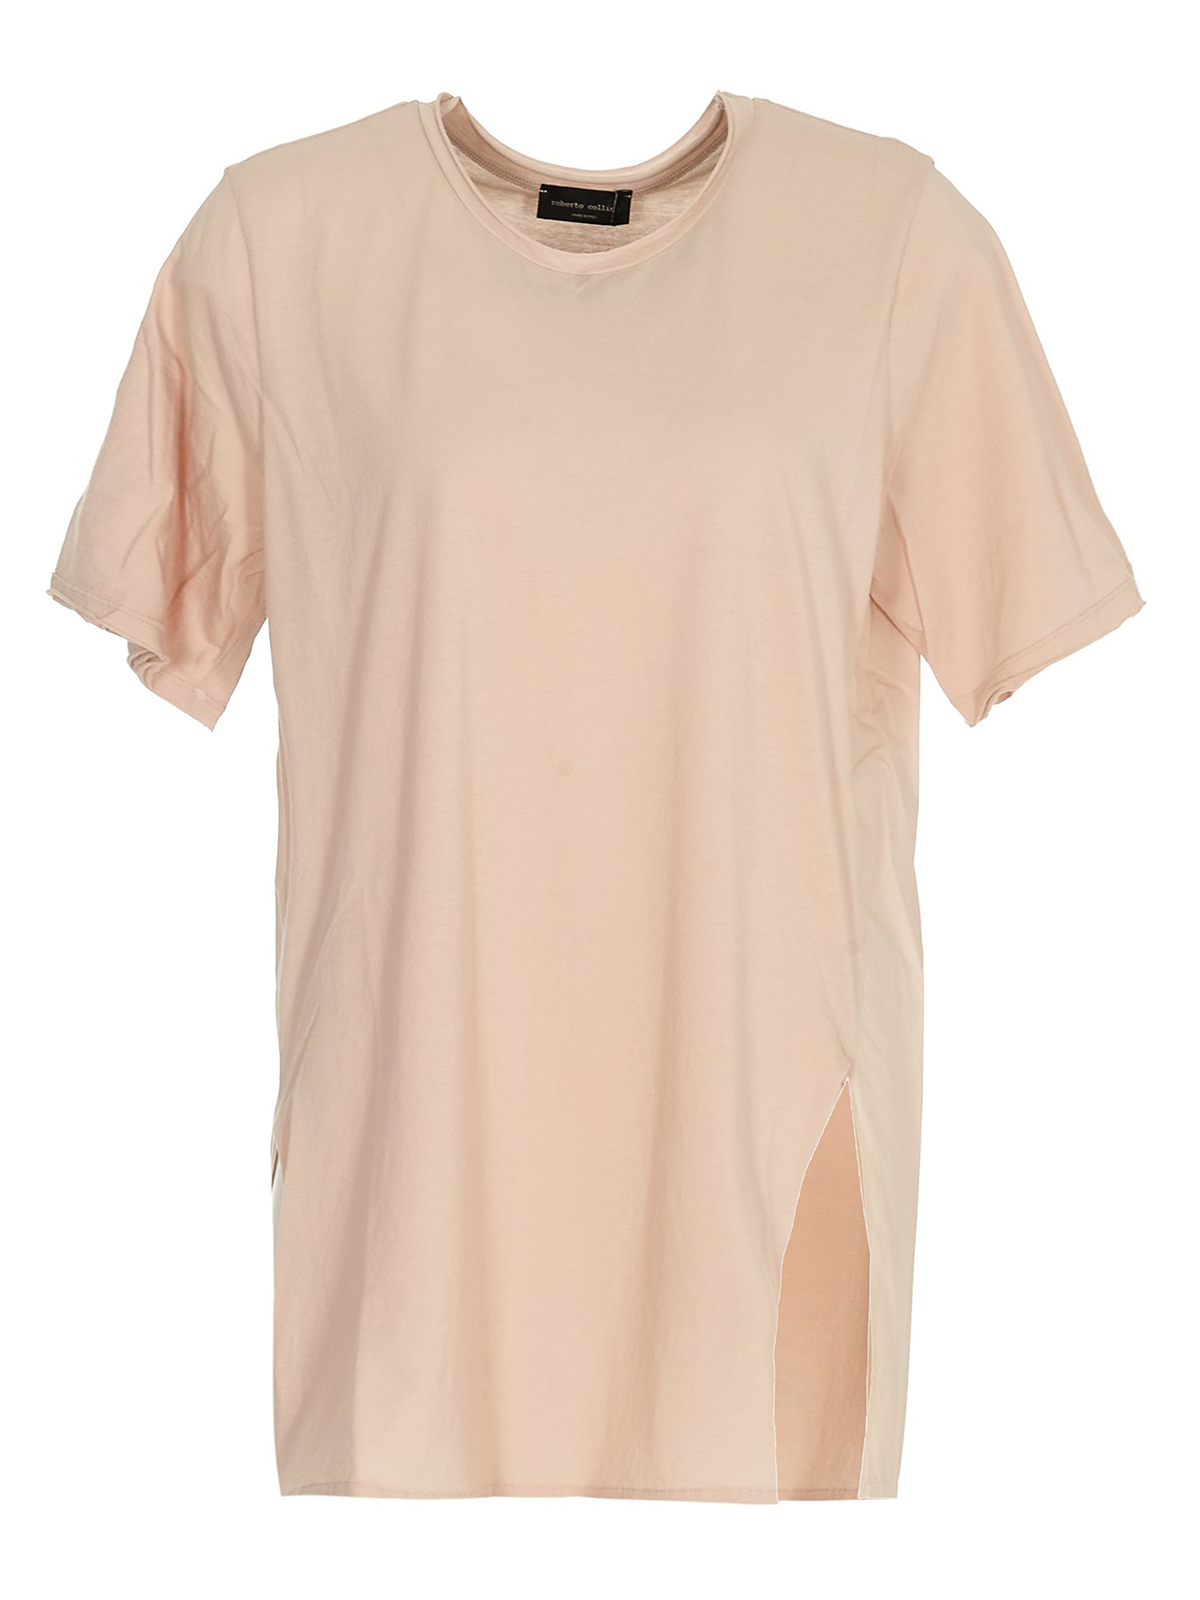 Camisetas Roberto Collina - Camiseta - Color Carne Y Neutral - E52221E5231